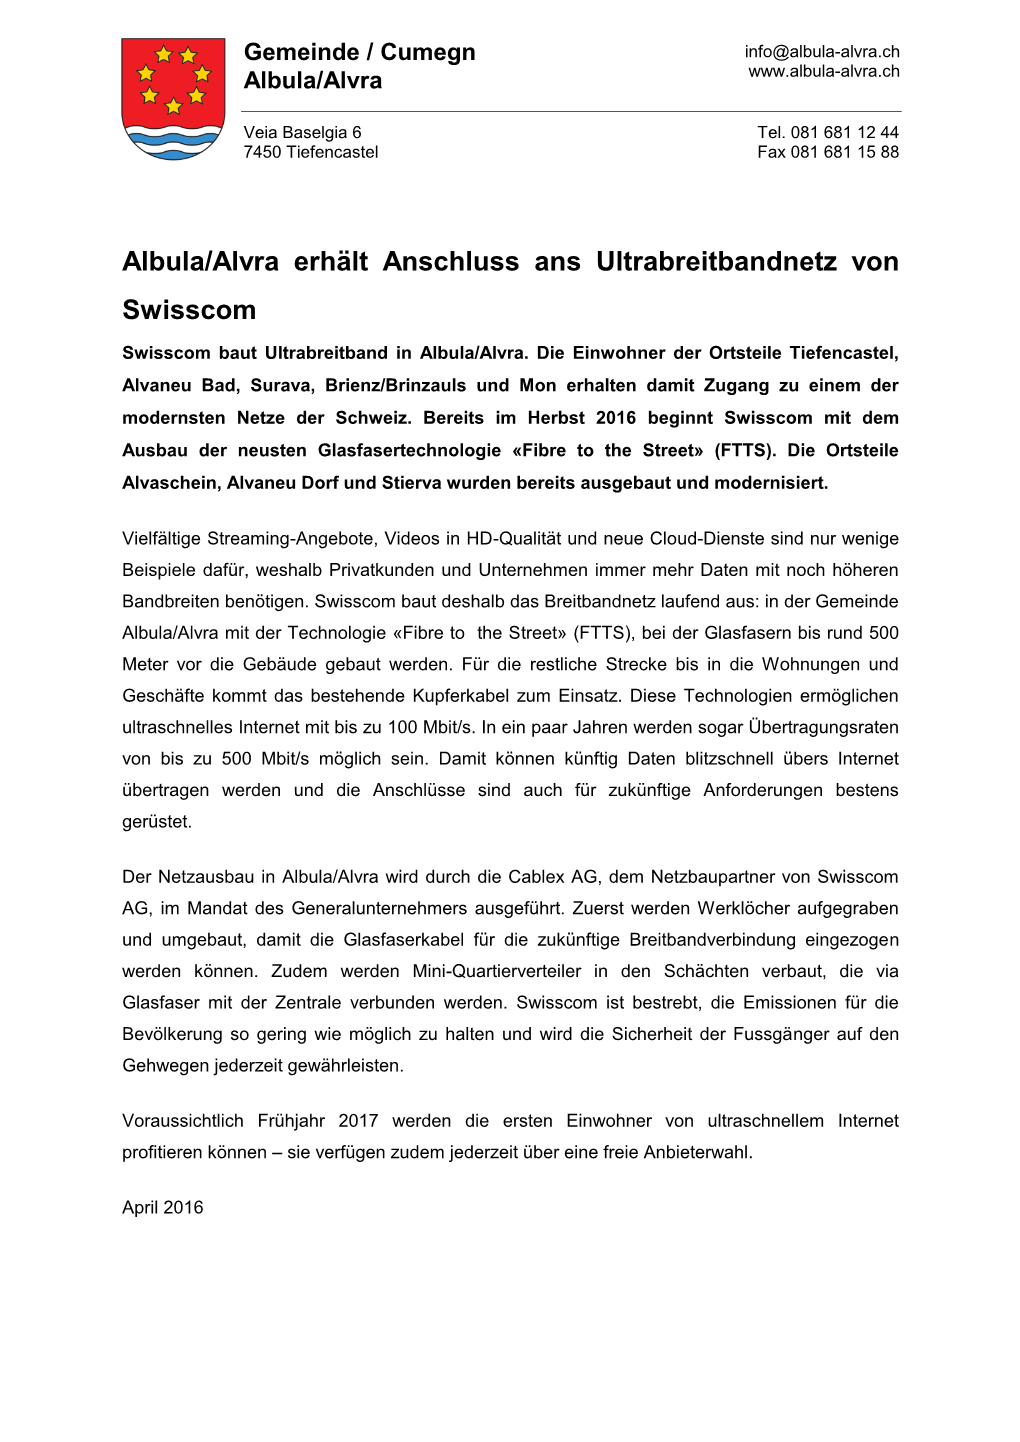 Albula/Alvra Erhält Anschluss Ans Ultrabreitbandnetz Von Swisscom